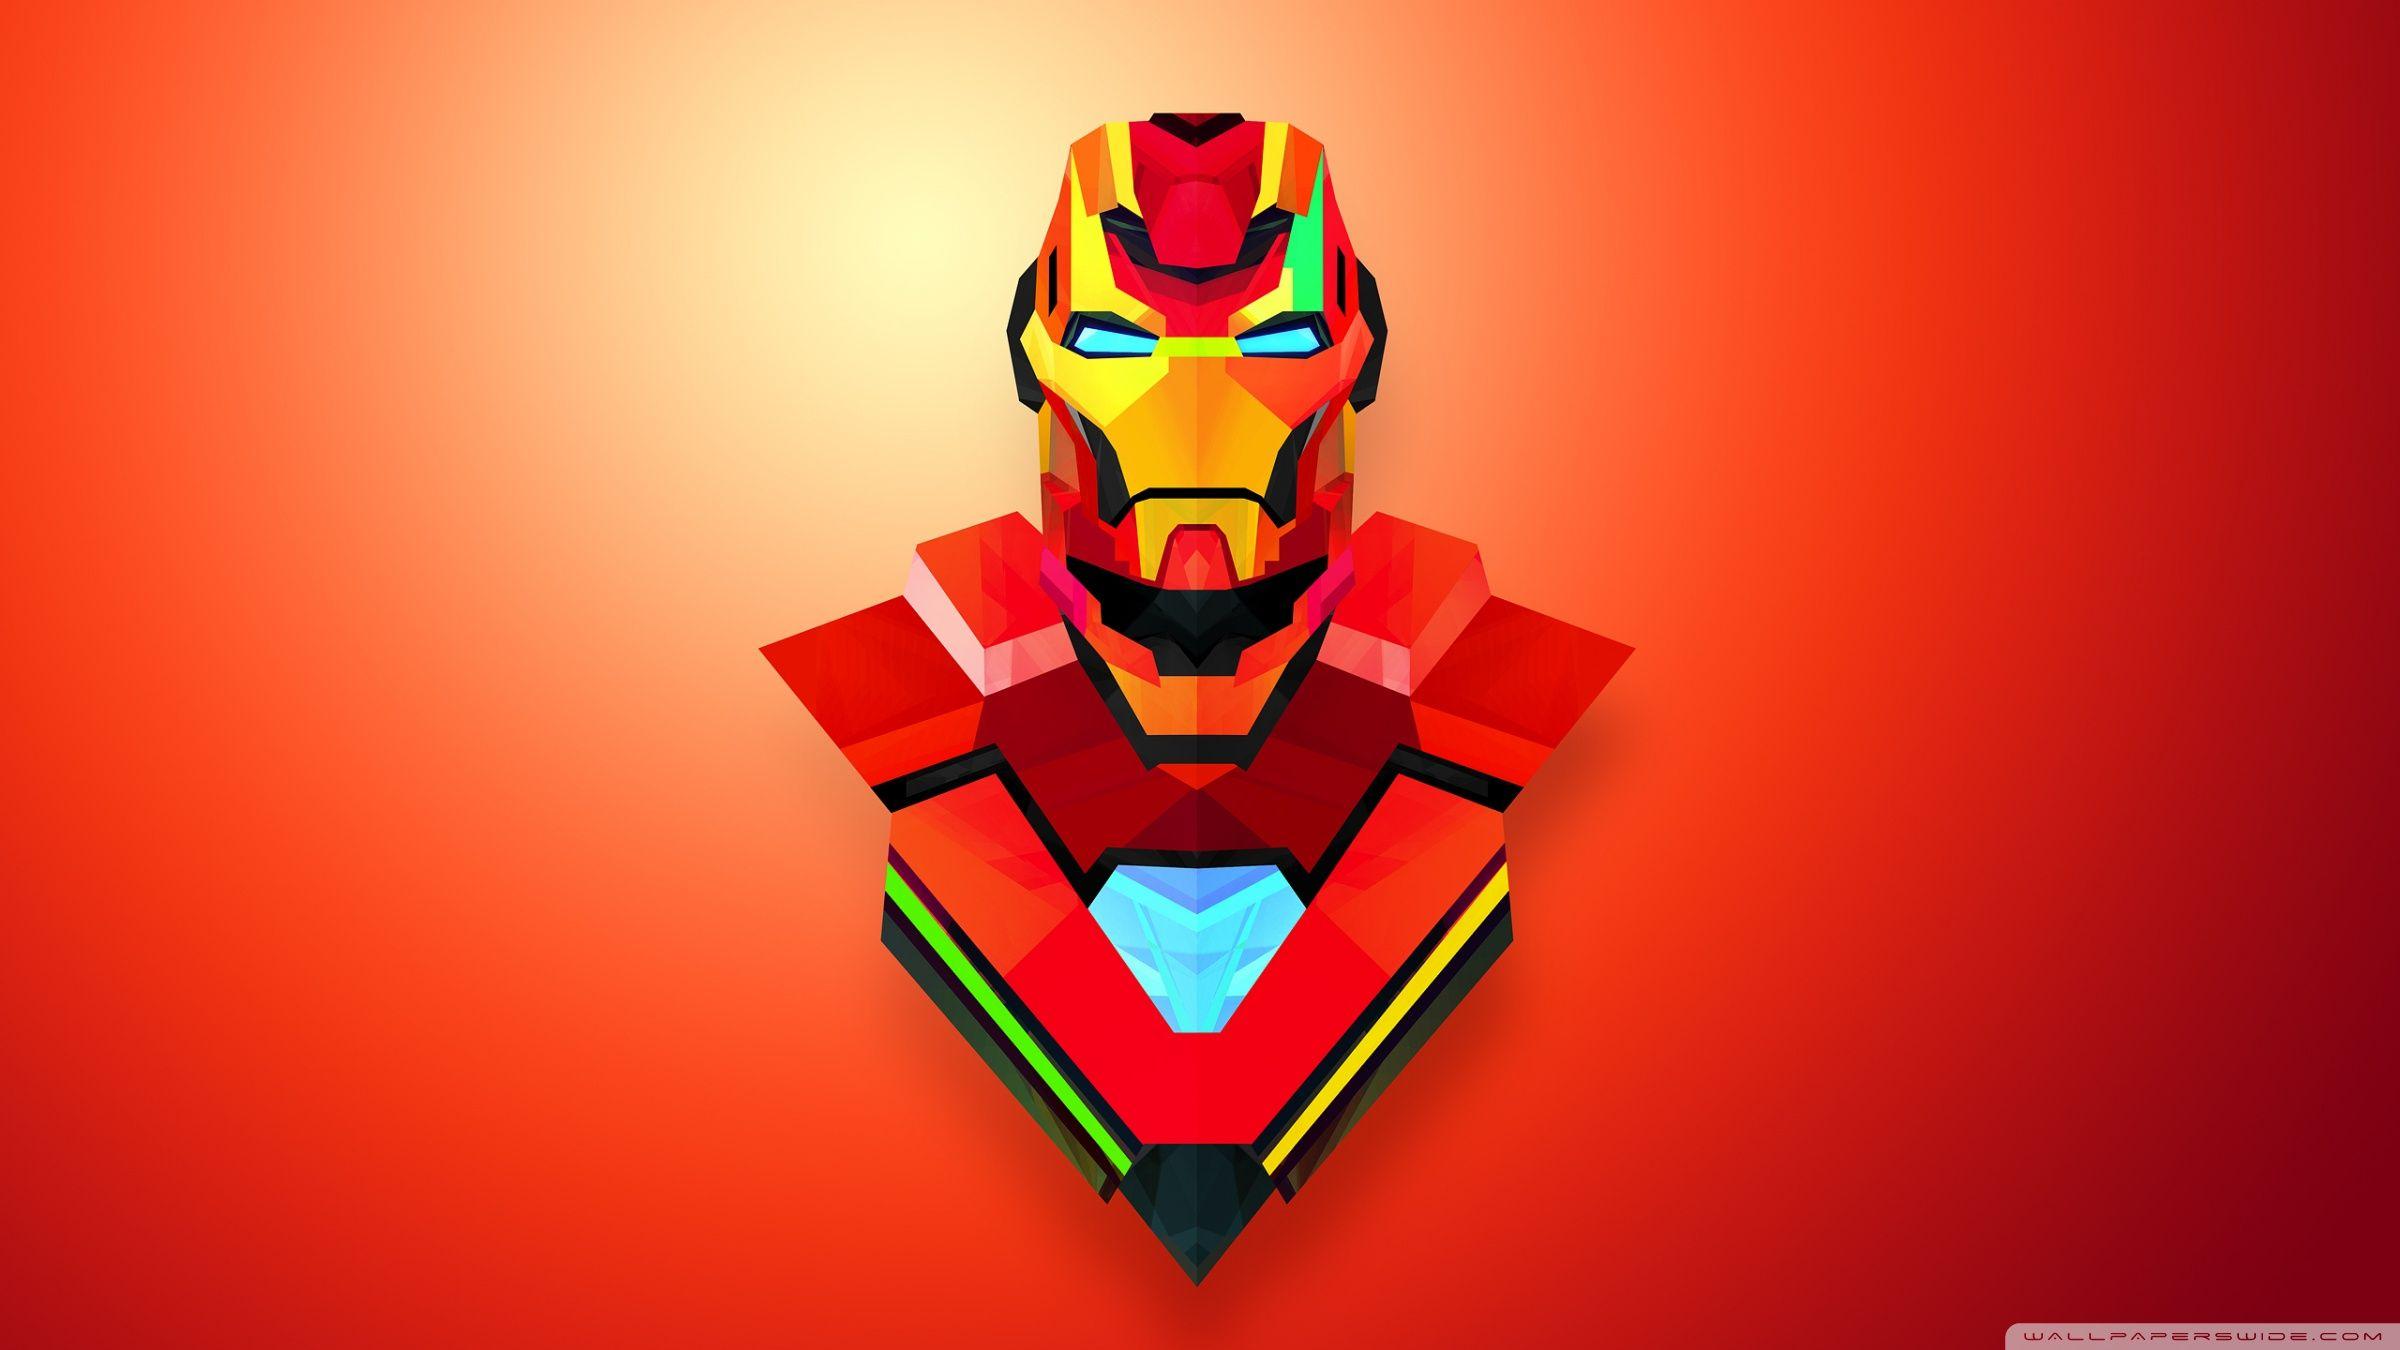 Cool Iron Man image.jpg